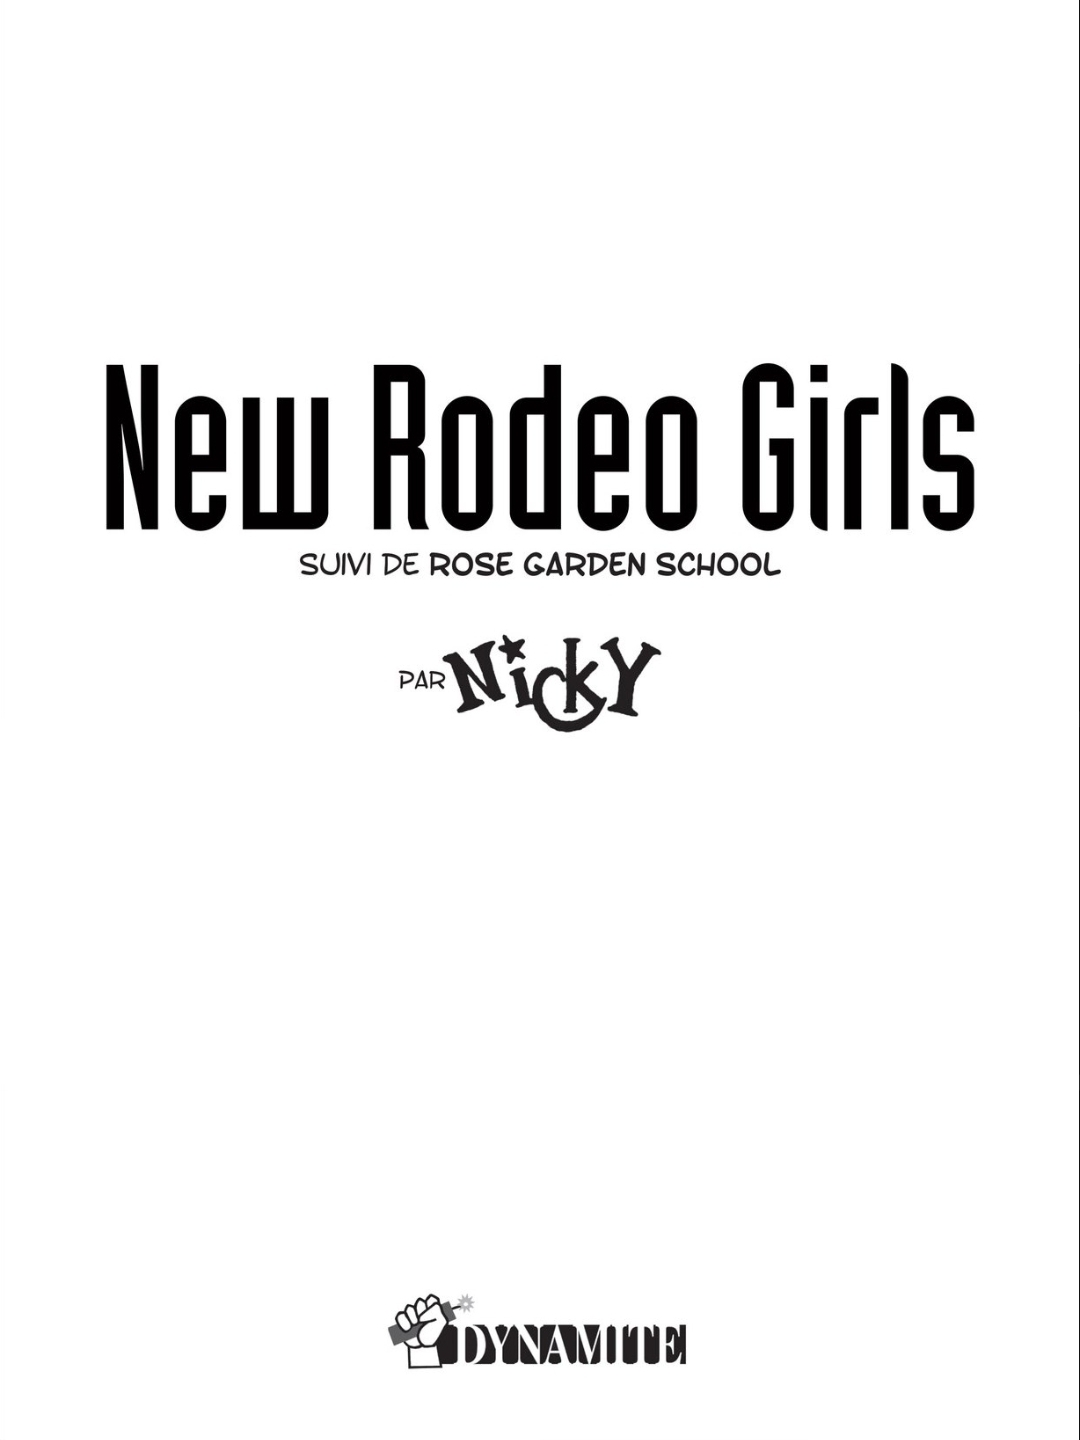 Rodeo Girls - Suivi De Rose Garden School numero d'image 1